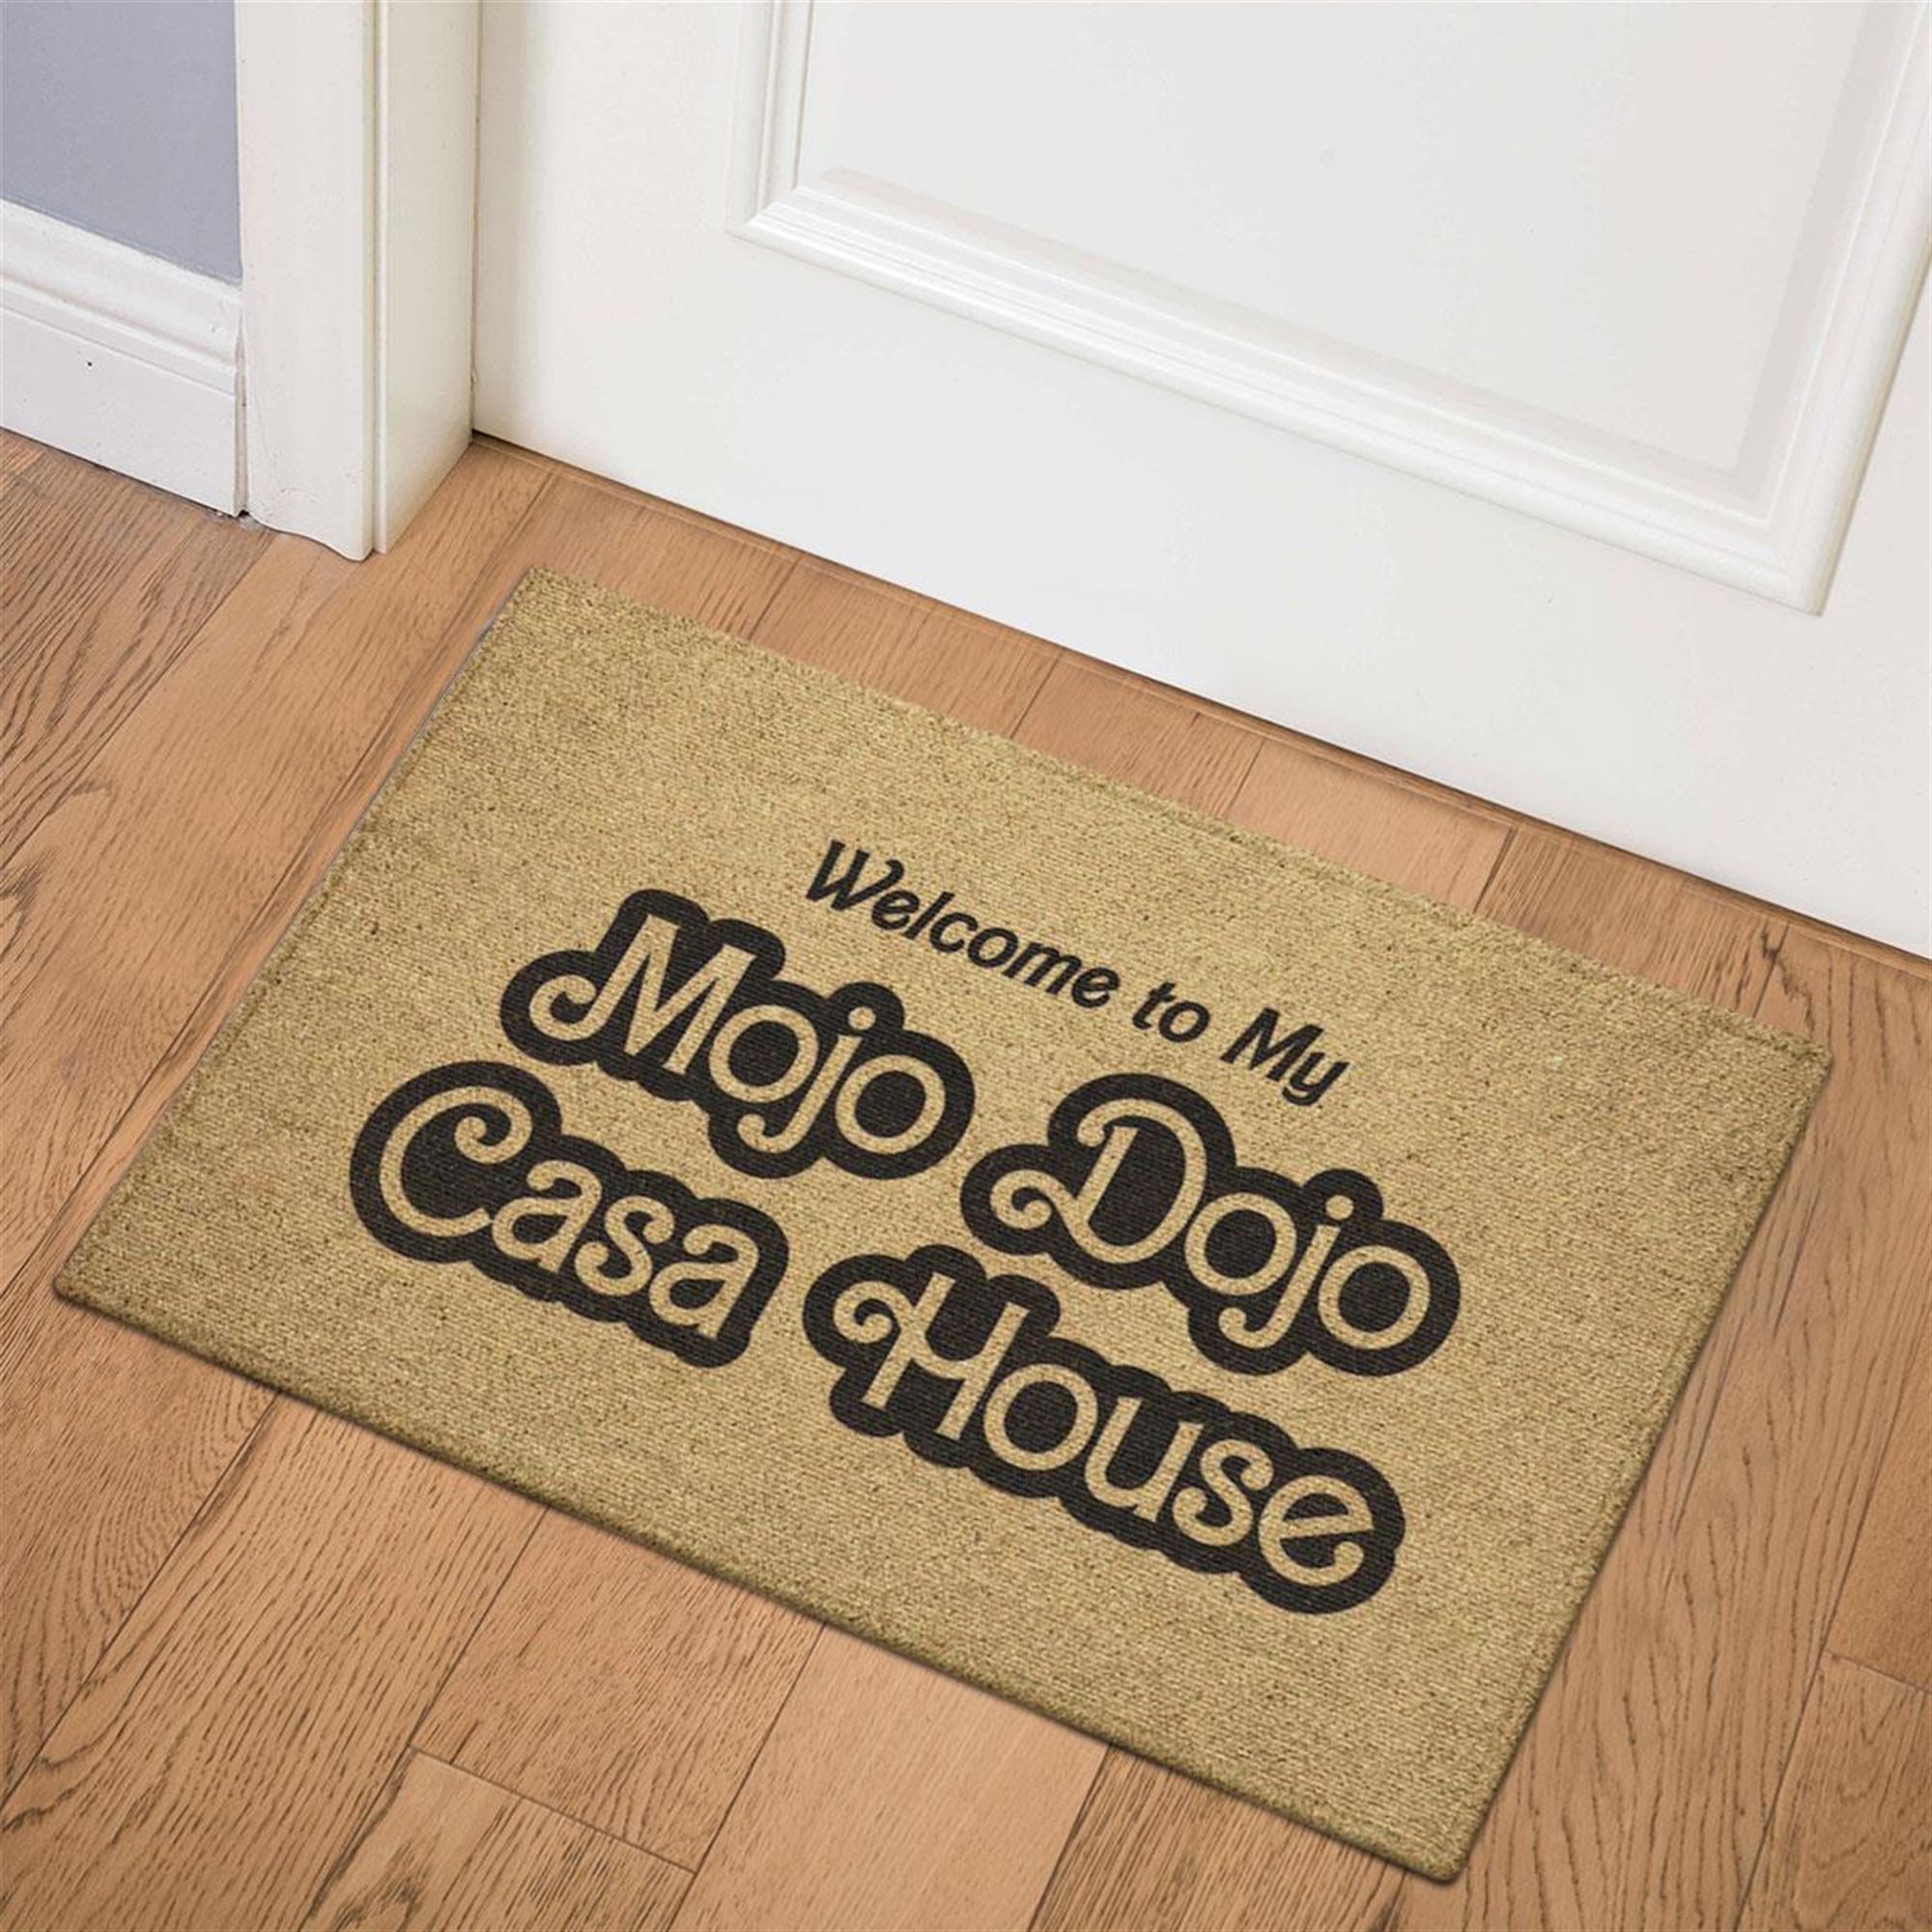 Mojo Dojo Casa House Doormat Barbie